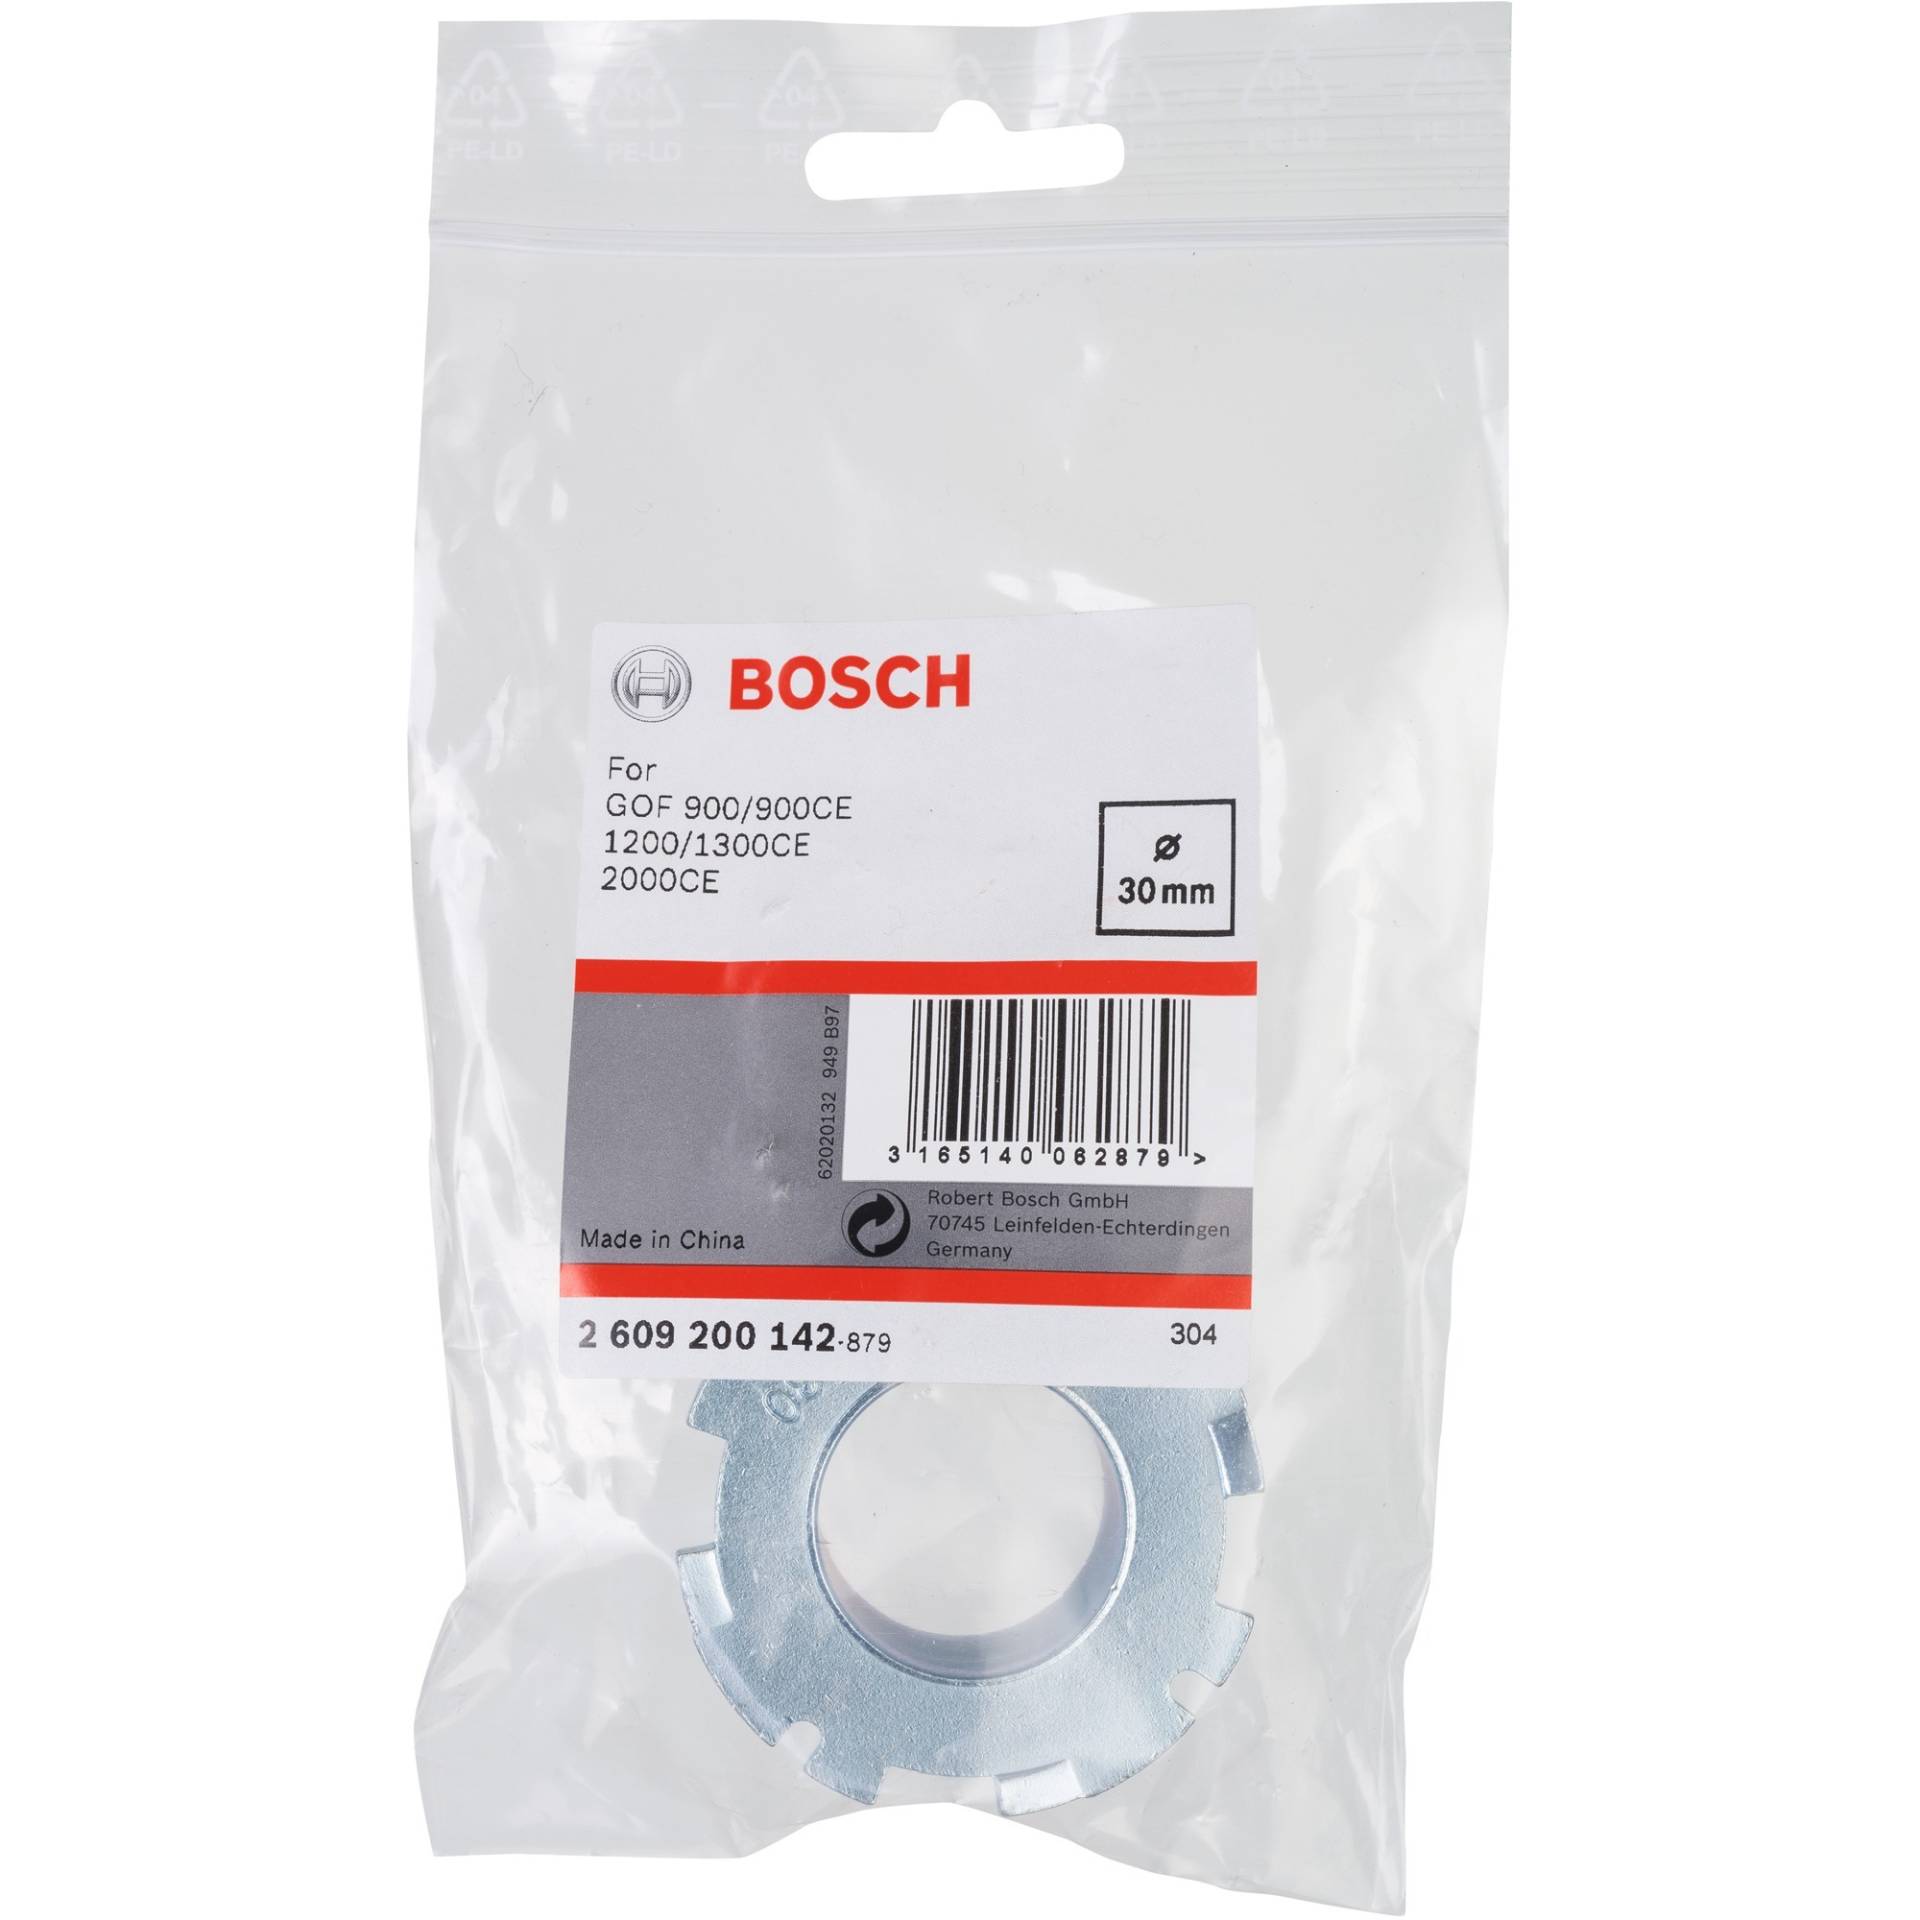 Kopierhülse mit Schnellverschluss, Ø 30mm, Aufsatz von Bosch